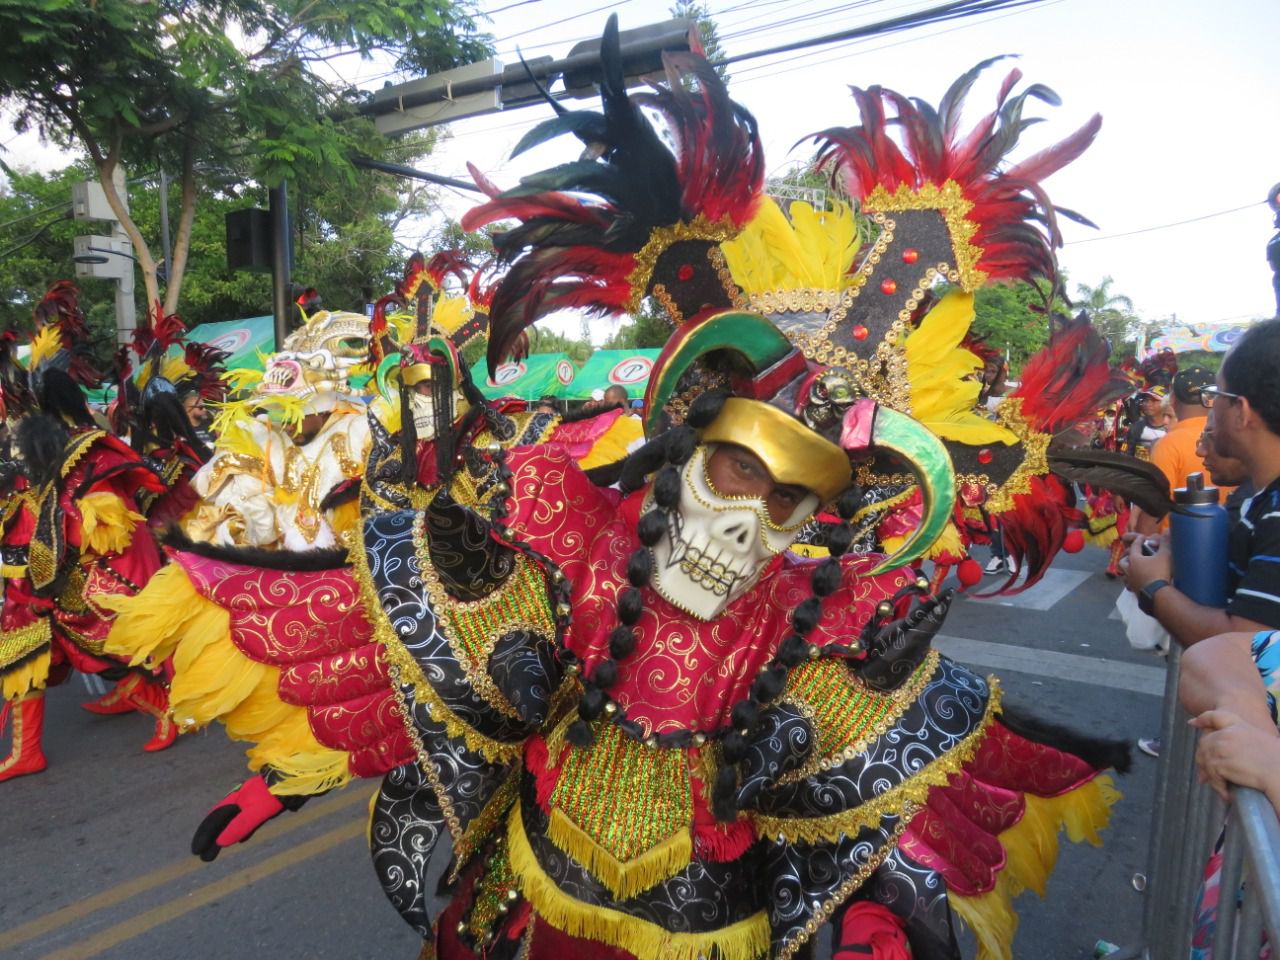 El Carnaval de la Vega es uno de los más populares del Carnaval Dominicano. 
Cada año se generan miles de visitas de turistas y locales para ver el desfile de las diferentes grupos veganos.